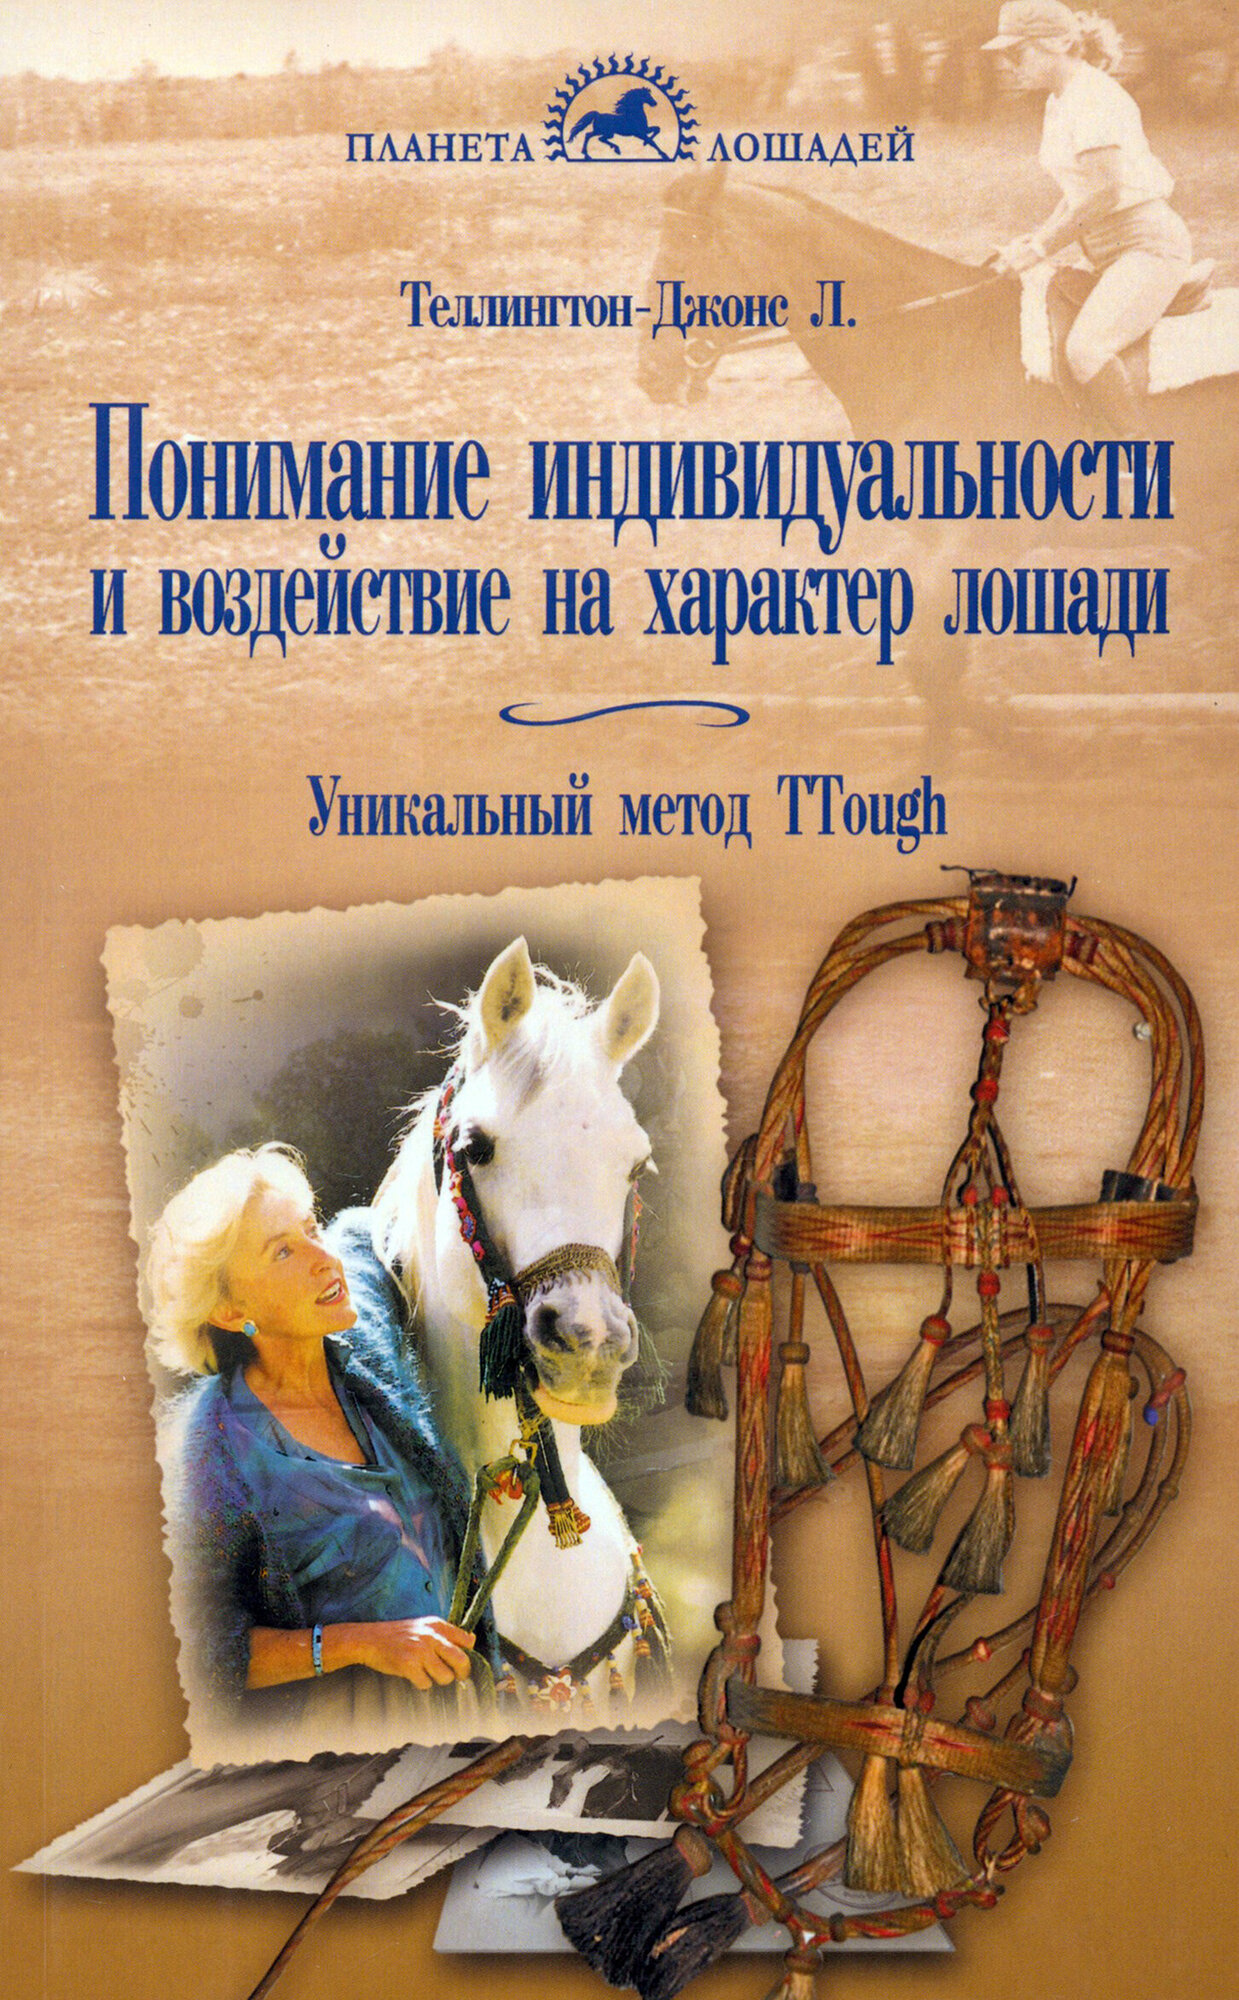 Понимание индивидуальности и воздействие на характер лошади Уникальный метод TTouch - фото №2